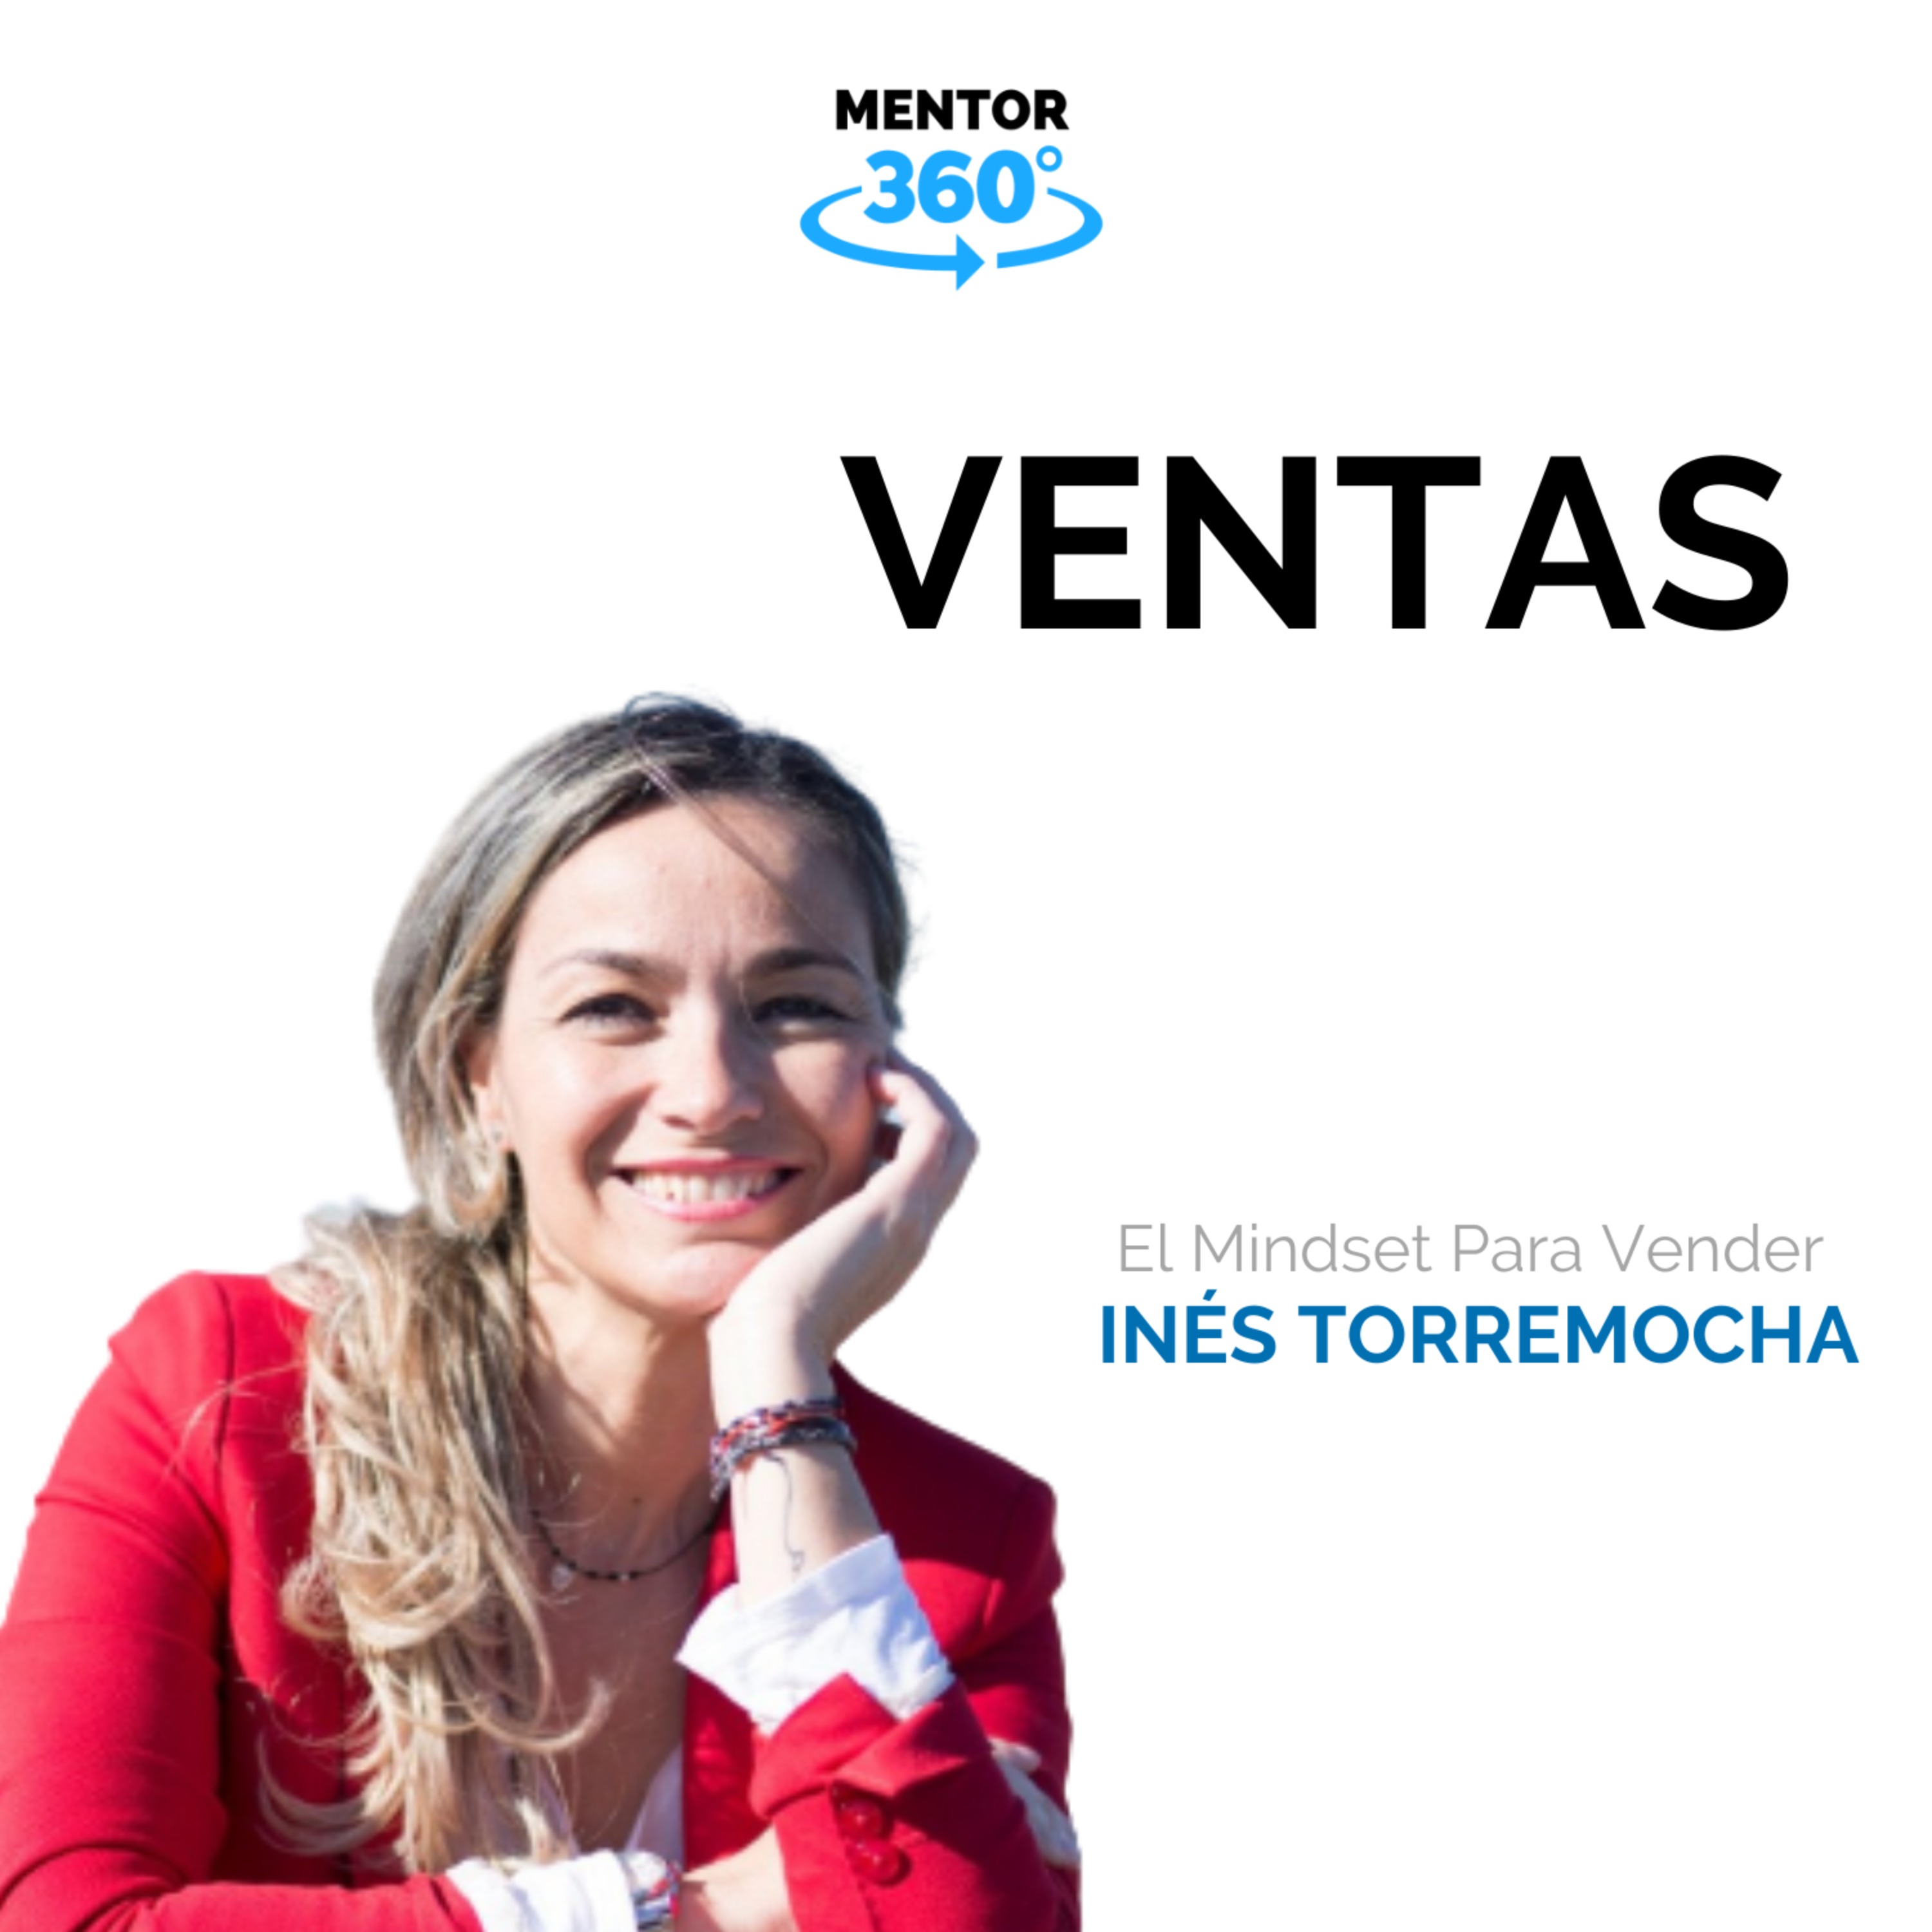 Ventas - El Mindset Para Vender - Inés Torremocha - MENTOR360